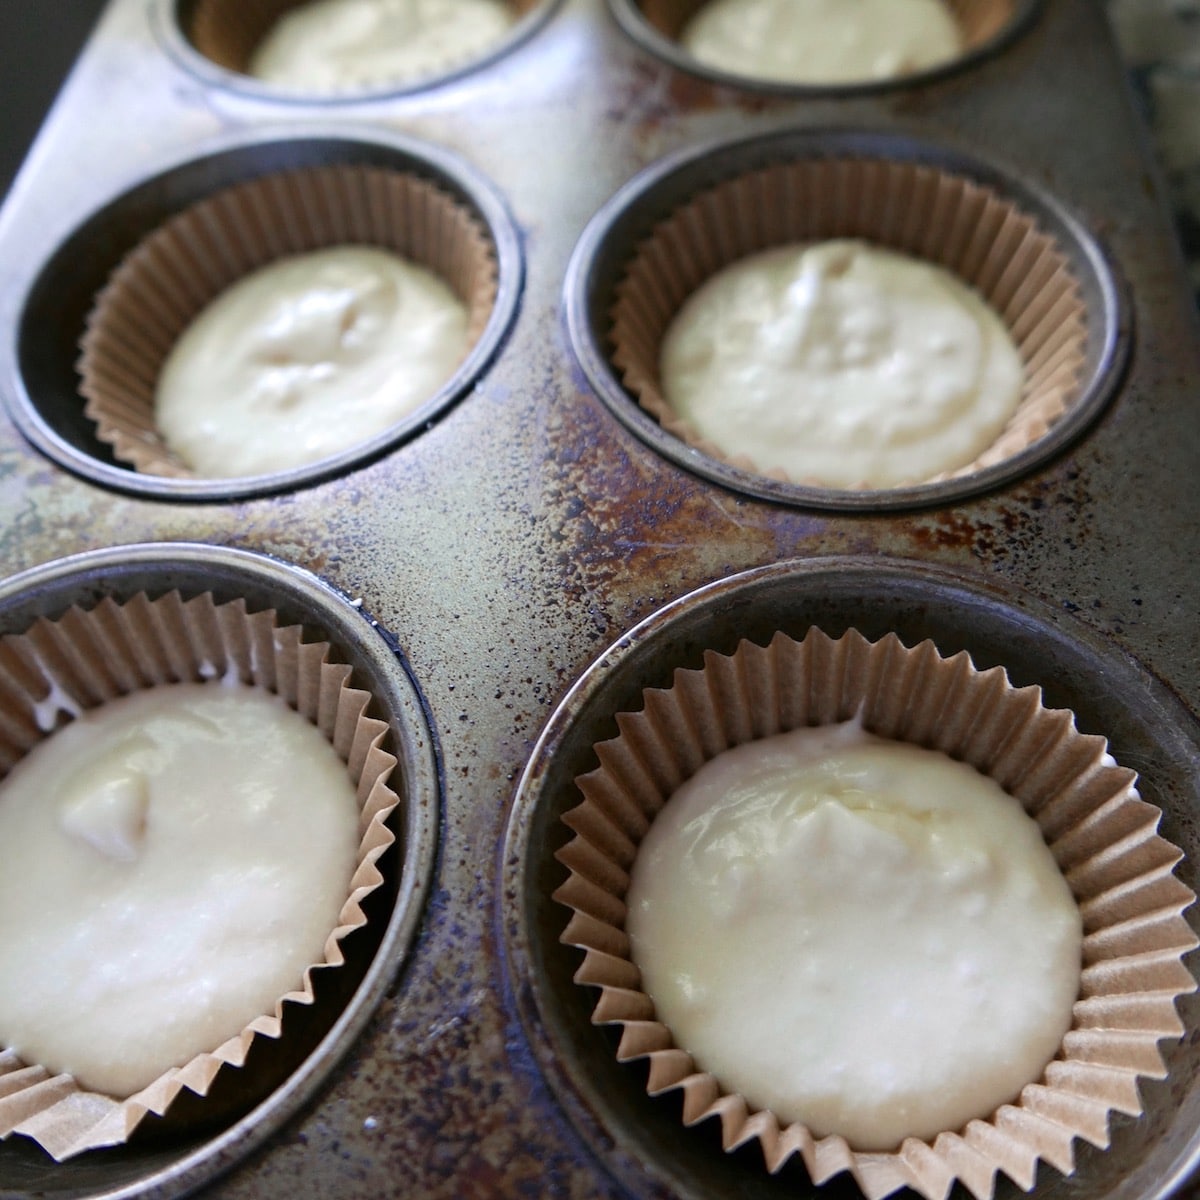 cupcake batter in a muffin tin